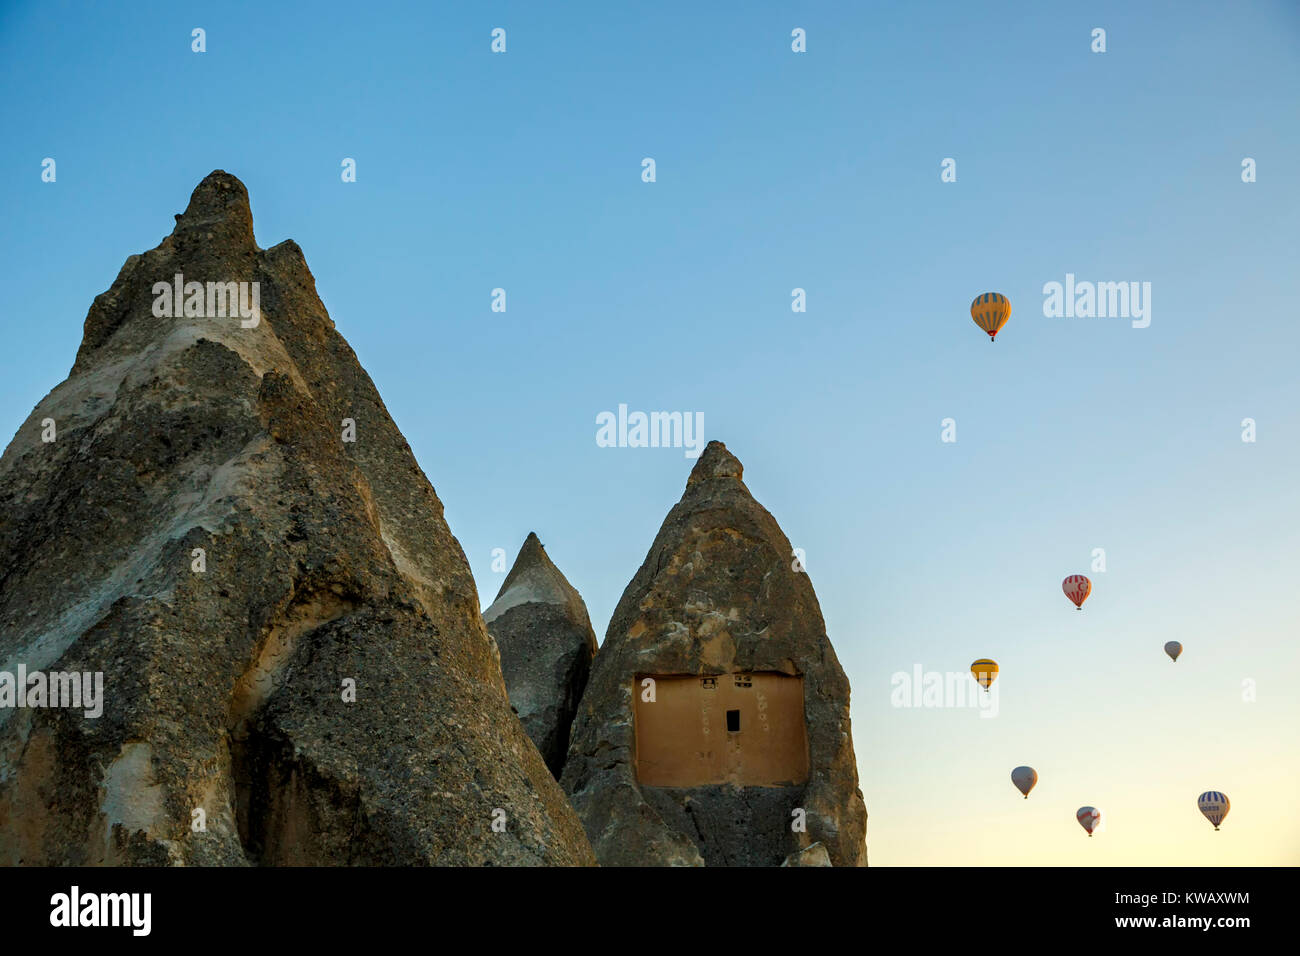 Fairy chimneys and hot air balloons, near Goreme, Cappadocia, Turkey Stock Photo